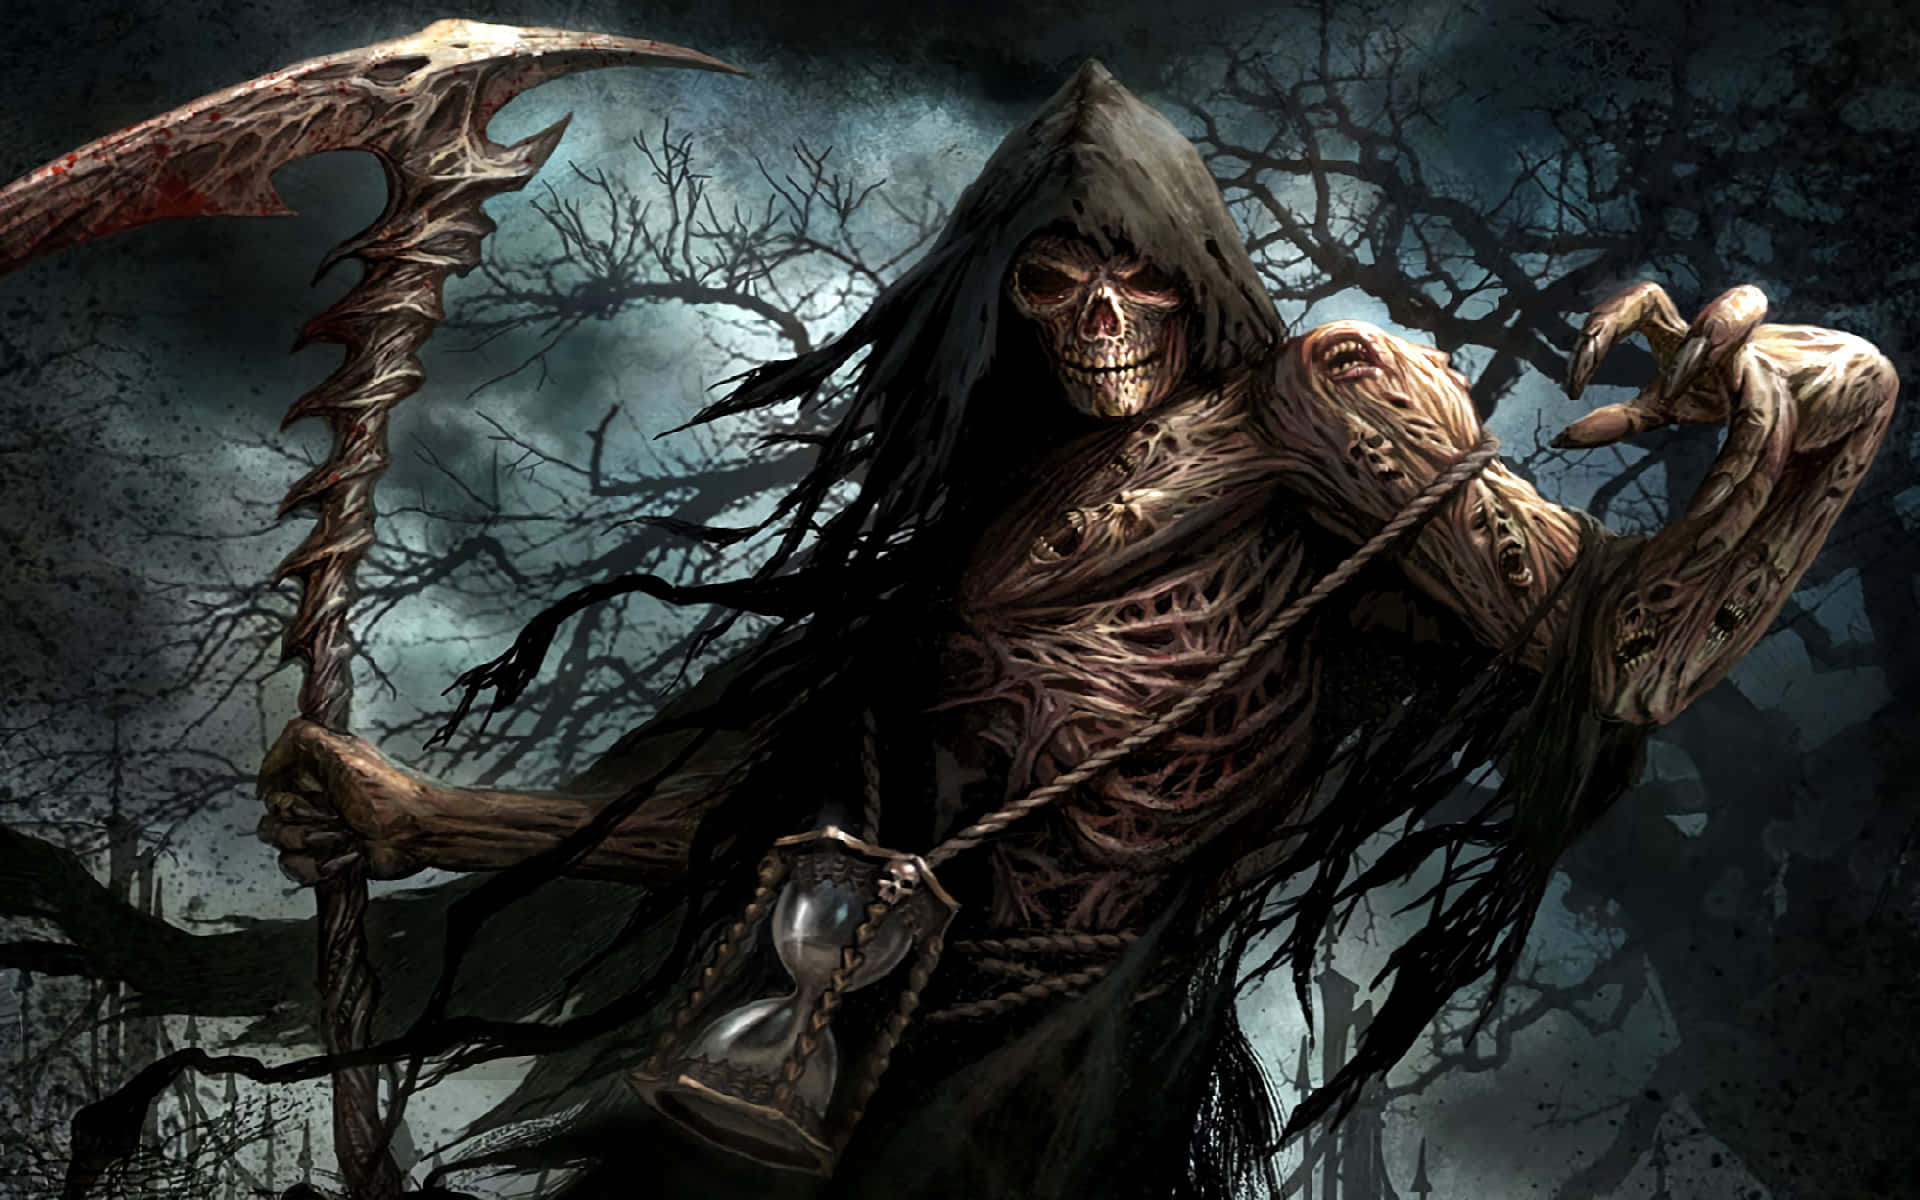 Dengrim Reaper Stirrar Hotfullt På Sitt Nästa Byte